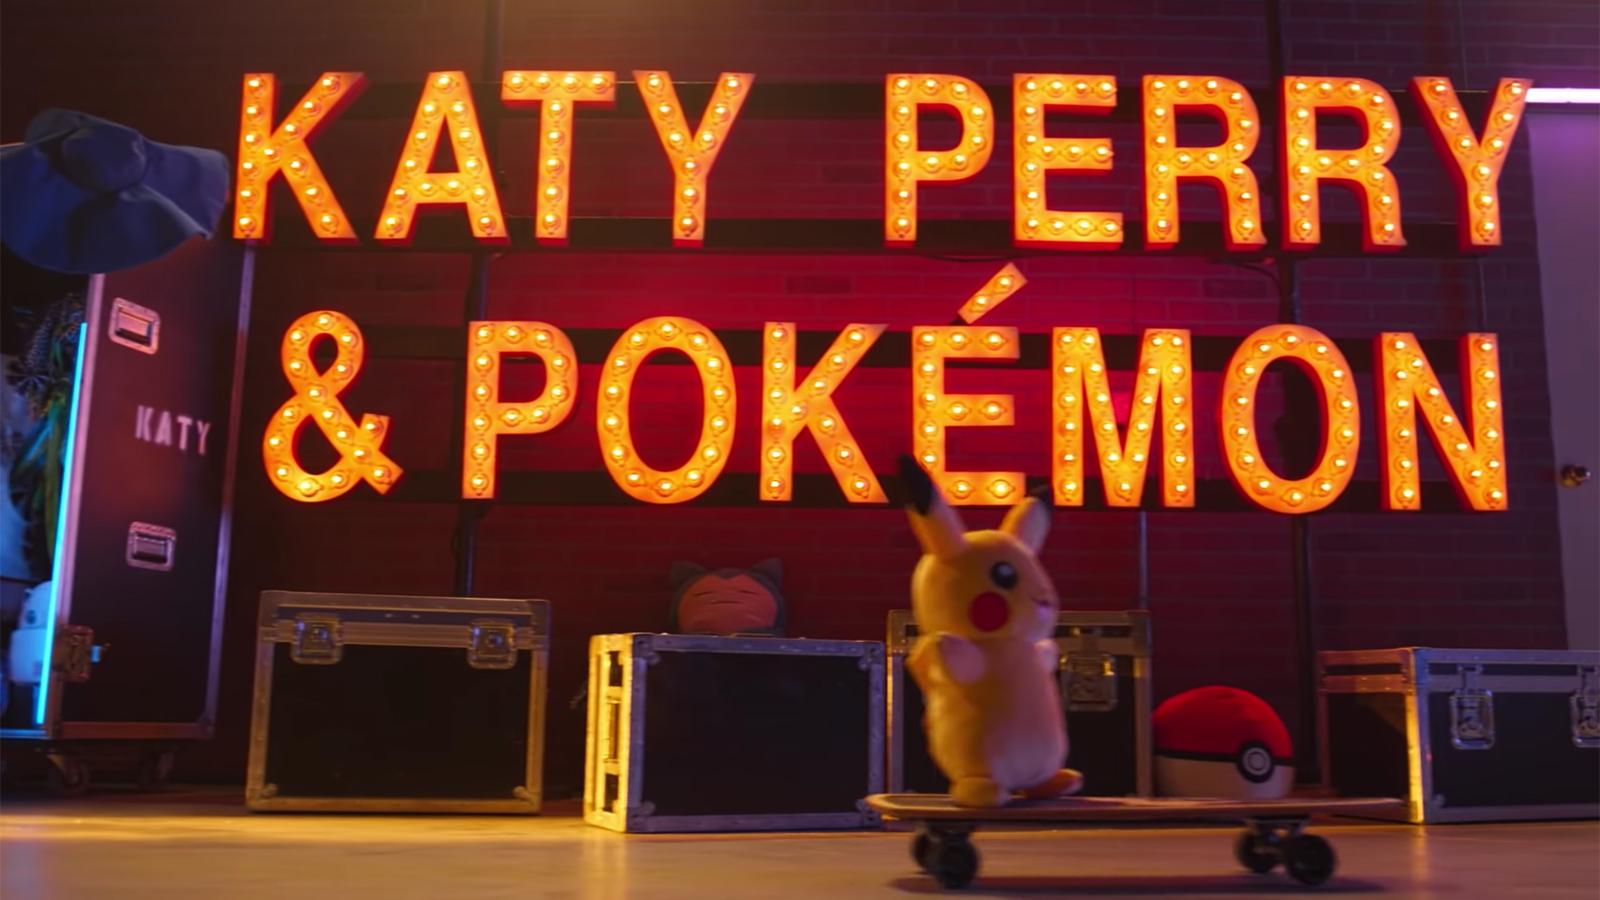 Cartel colaboración Pokémon y Katy Perry